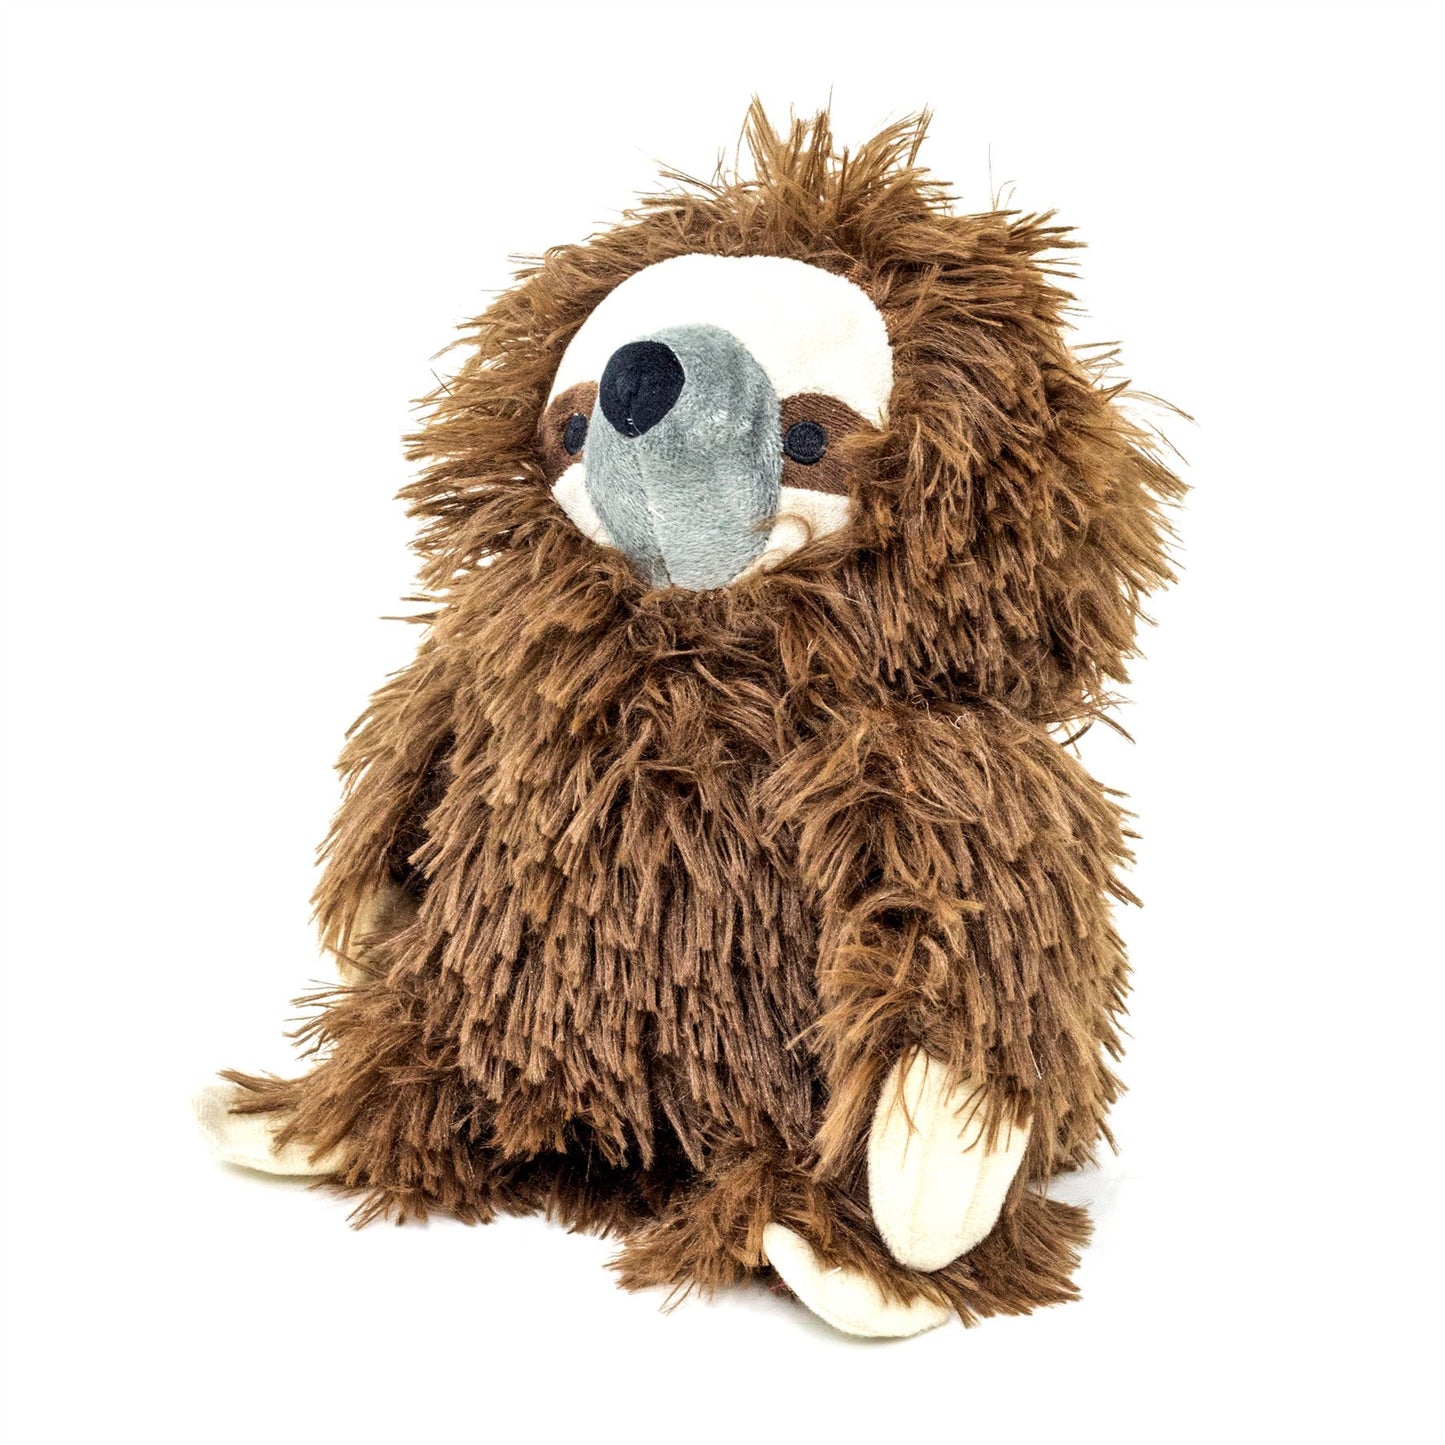 Shaggy Sloth Doorstop | Sloth Shaped Door Stop Fabric Animal Doorstop - Brown